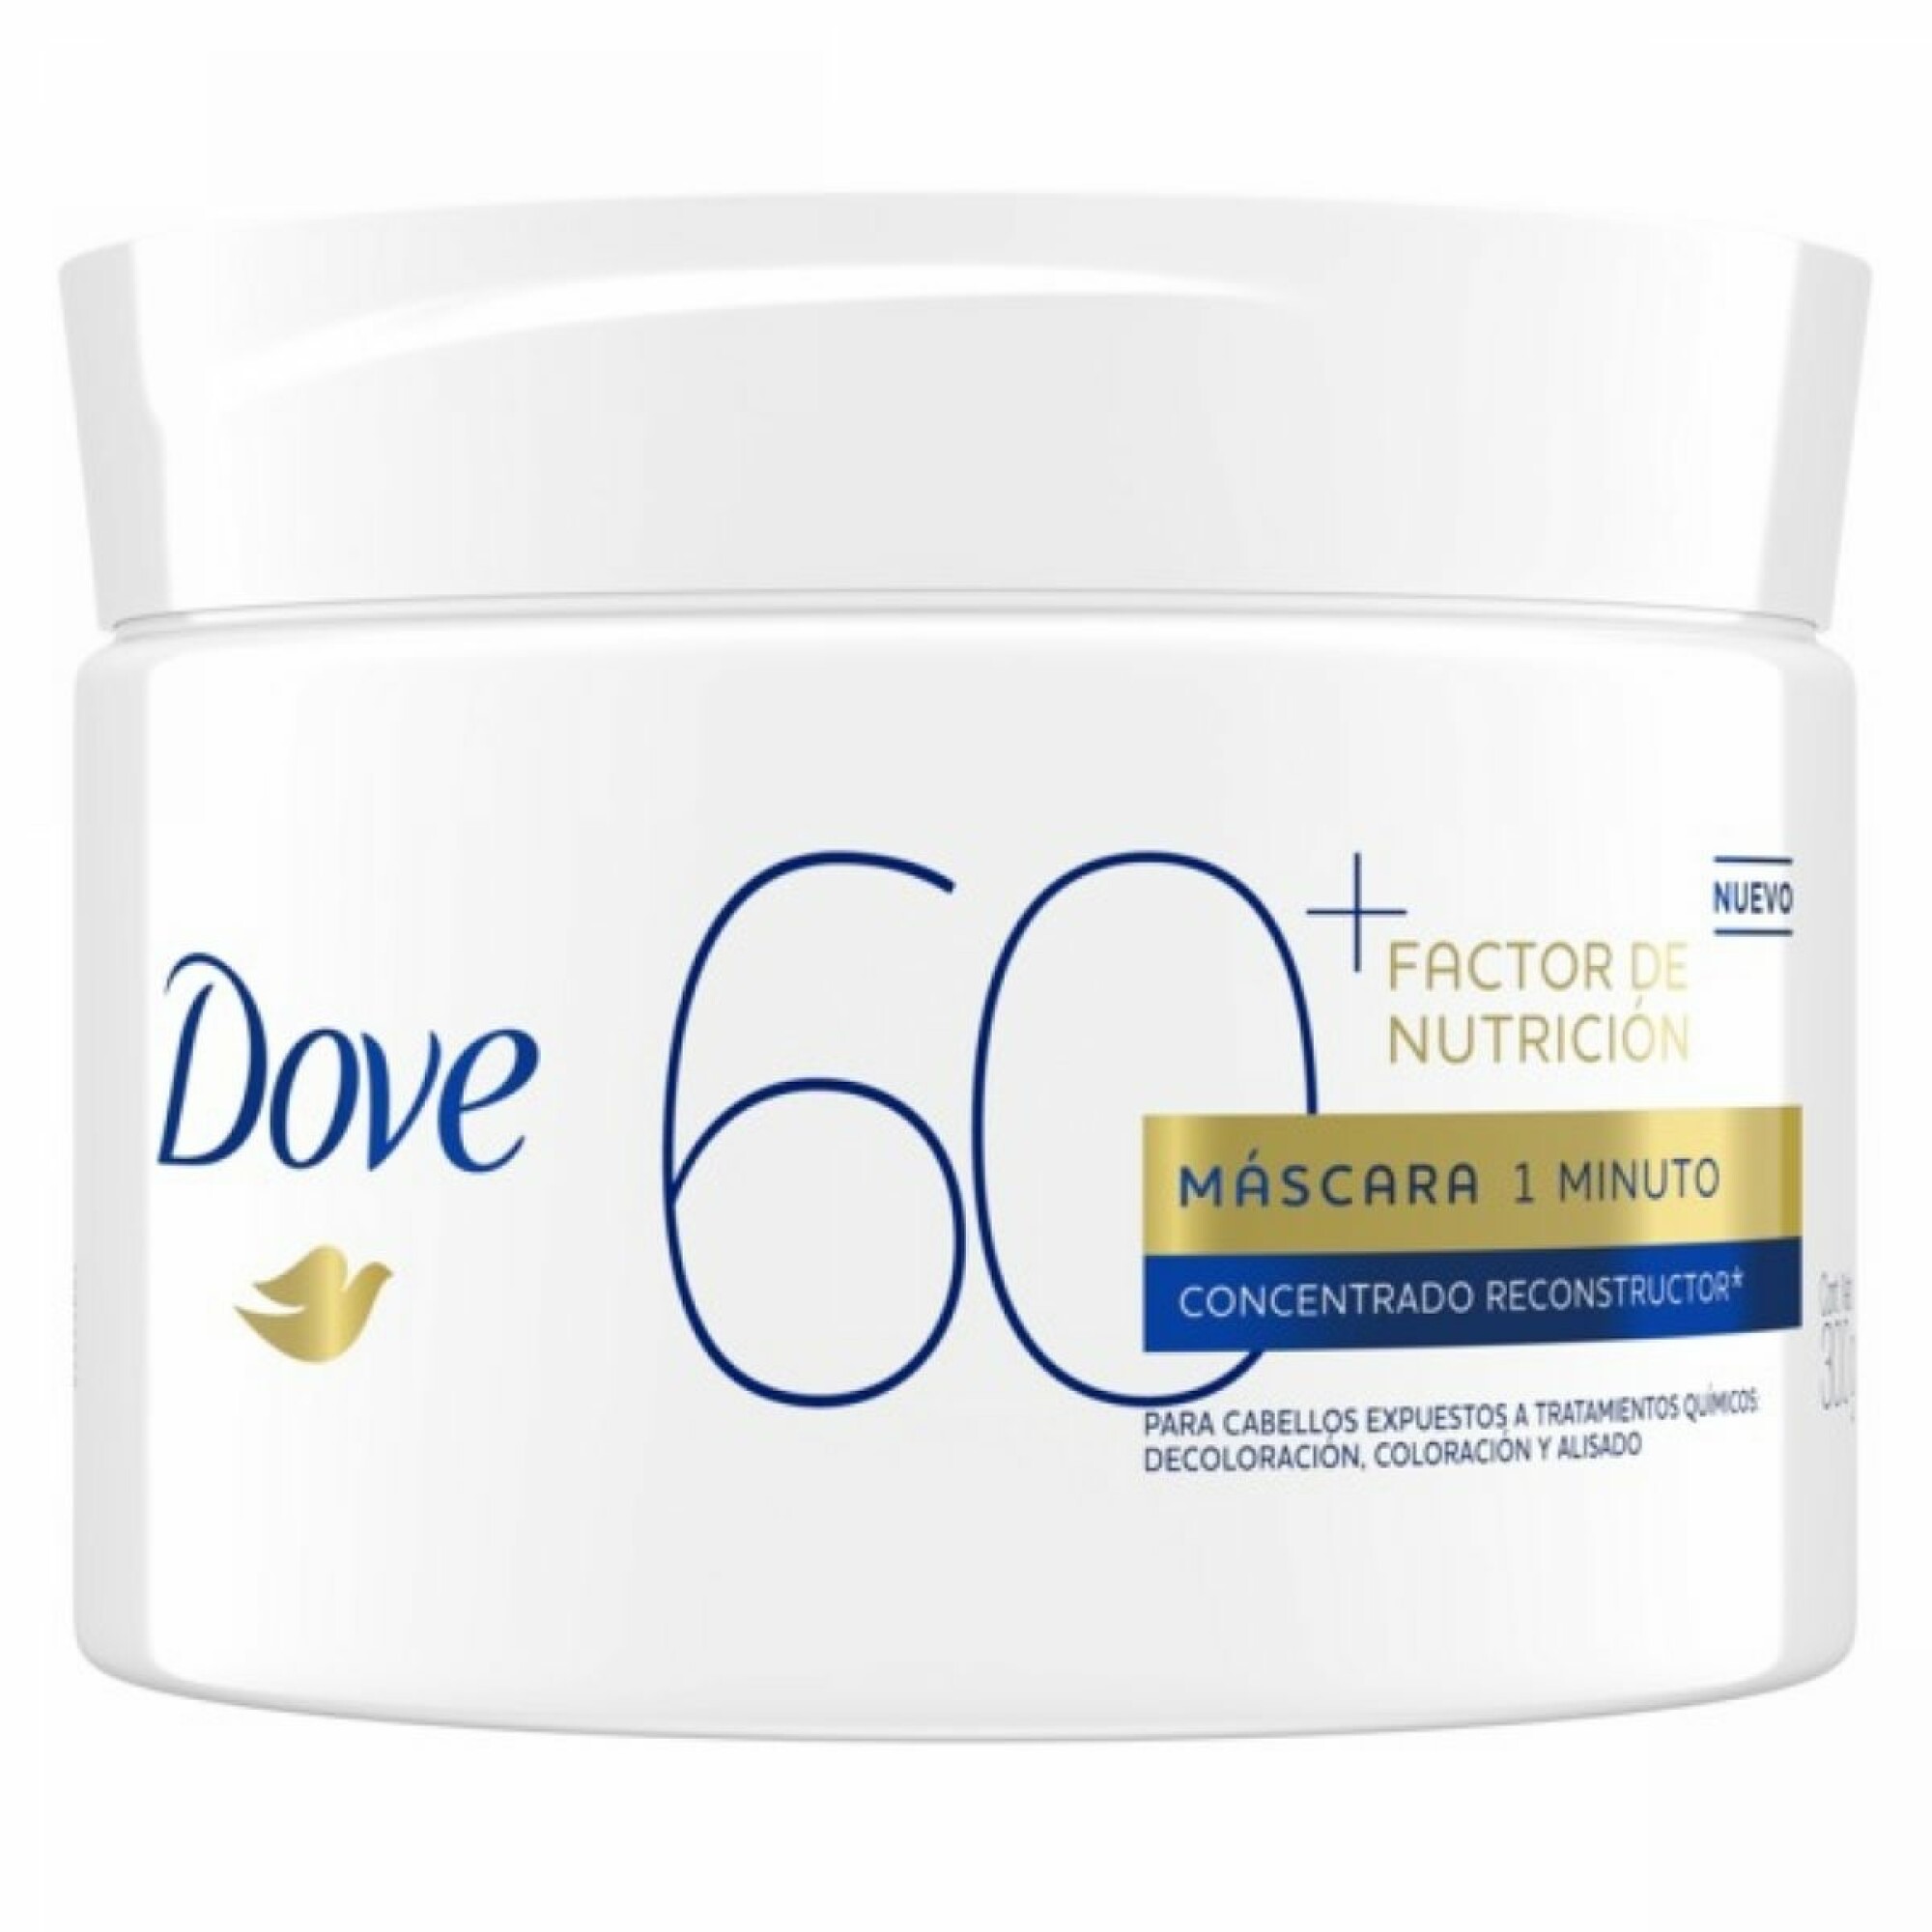 Dove crema de tratamiento factor +60 - 300g